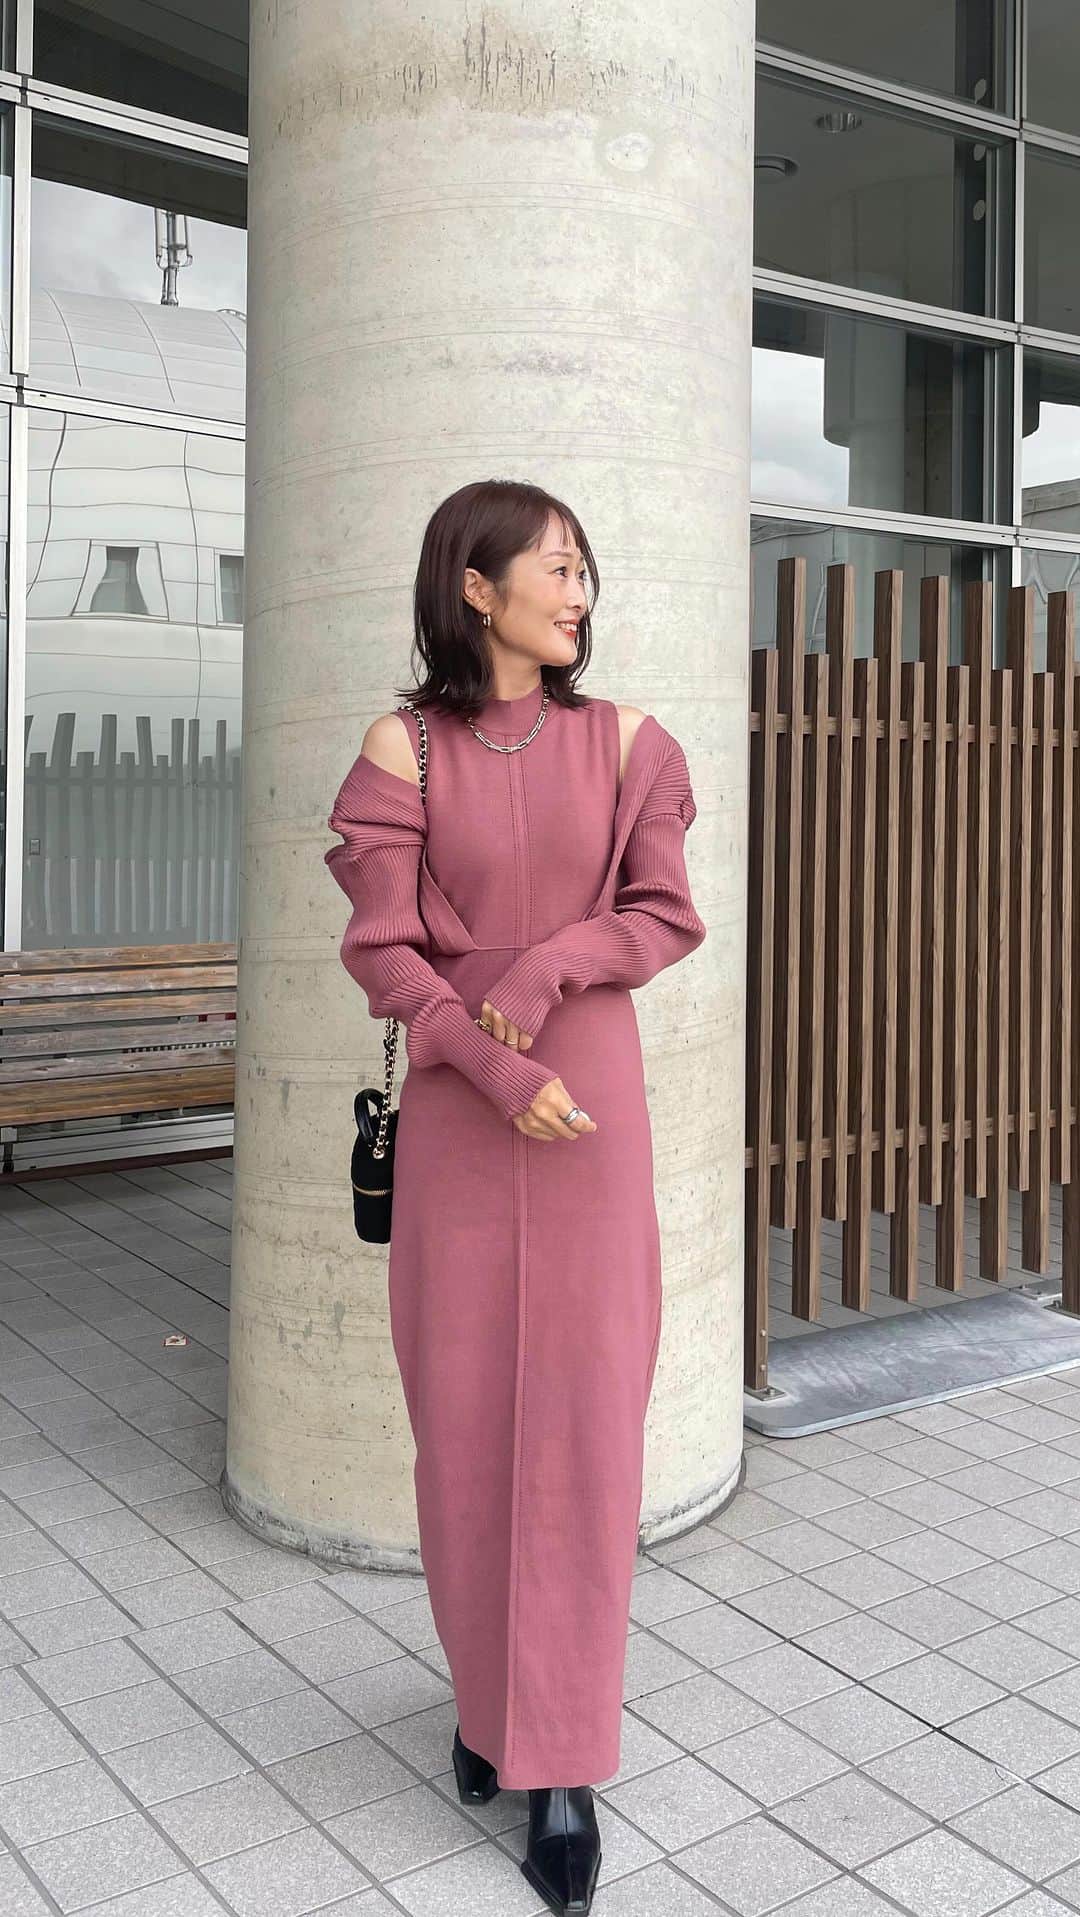 Kikuno Sayumiのインスタグラム：「@abitokyo_collection とのコラボのワンピが本日18時から発売されました😆❤️ ・ 秋冬アイテムではニットワンピが1番好きで良く着るんやけど、ラインのキレイさと肩がチラ見えするデザインが大人可愛くてこのワンピを選んだよ👗158センチでこの丈感だよ。 ・ 秋冬はどうしてもトーンが暗くなりがちやけん明るめのカラーにしたのがポイント😙くすみピンクで大人女子でも着やすいよ✨旦那さんにも好評で、クリスマスデートにもぴったり🥰 ・ 一点注意なのが、デザイン上肩が落ちやすく、私みたいななで肩の方はちょいちょい落ちてくるかも💦腕まくりしたり下に引っ張って着ると落ちにくいです✨でも落ちてきても可愛い🥰 ・ ・ お安くなってるので是非チェックしてみてね😍 ・ ・ #PR#abitokyo #アビトーキョー #abitokyoコラボ #abitokyocollaboration#ニットワンピ#ママコーデ#クリスマスコーデ#秋冬コーデ」